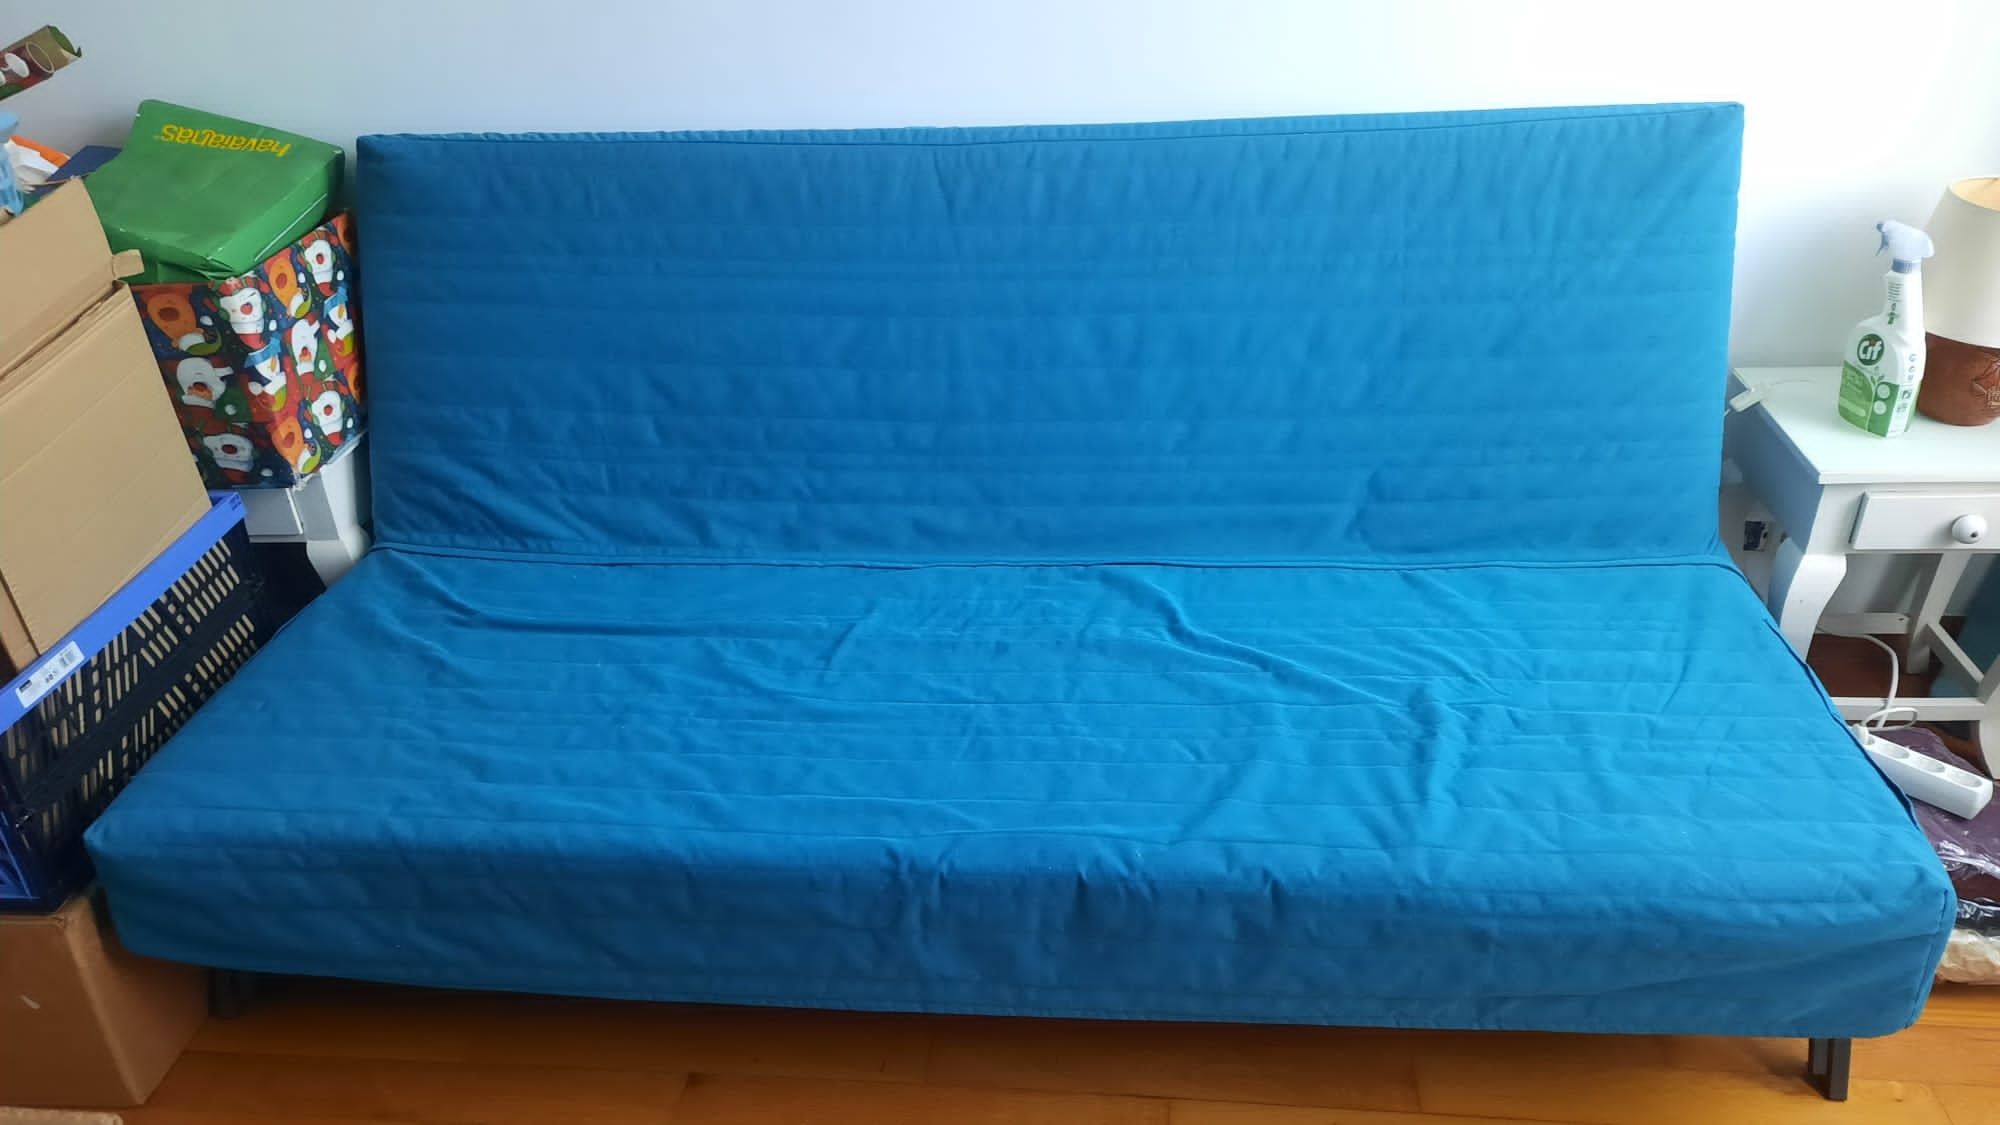 Sofá-cama click-clack IKEA